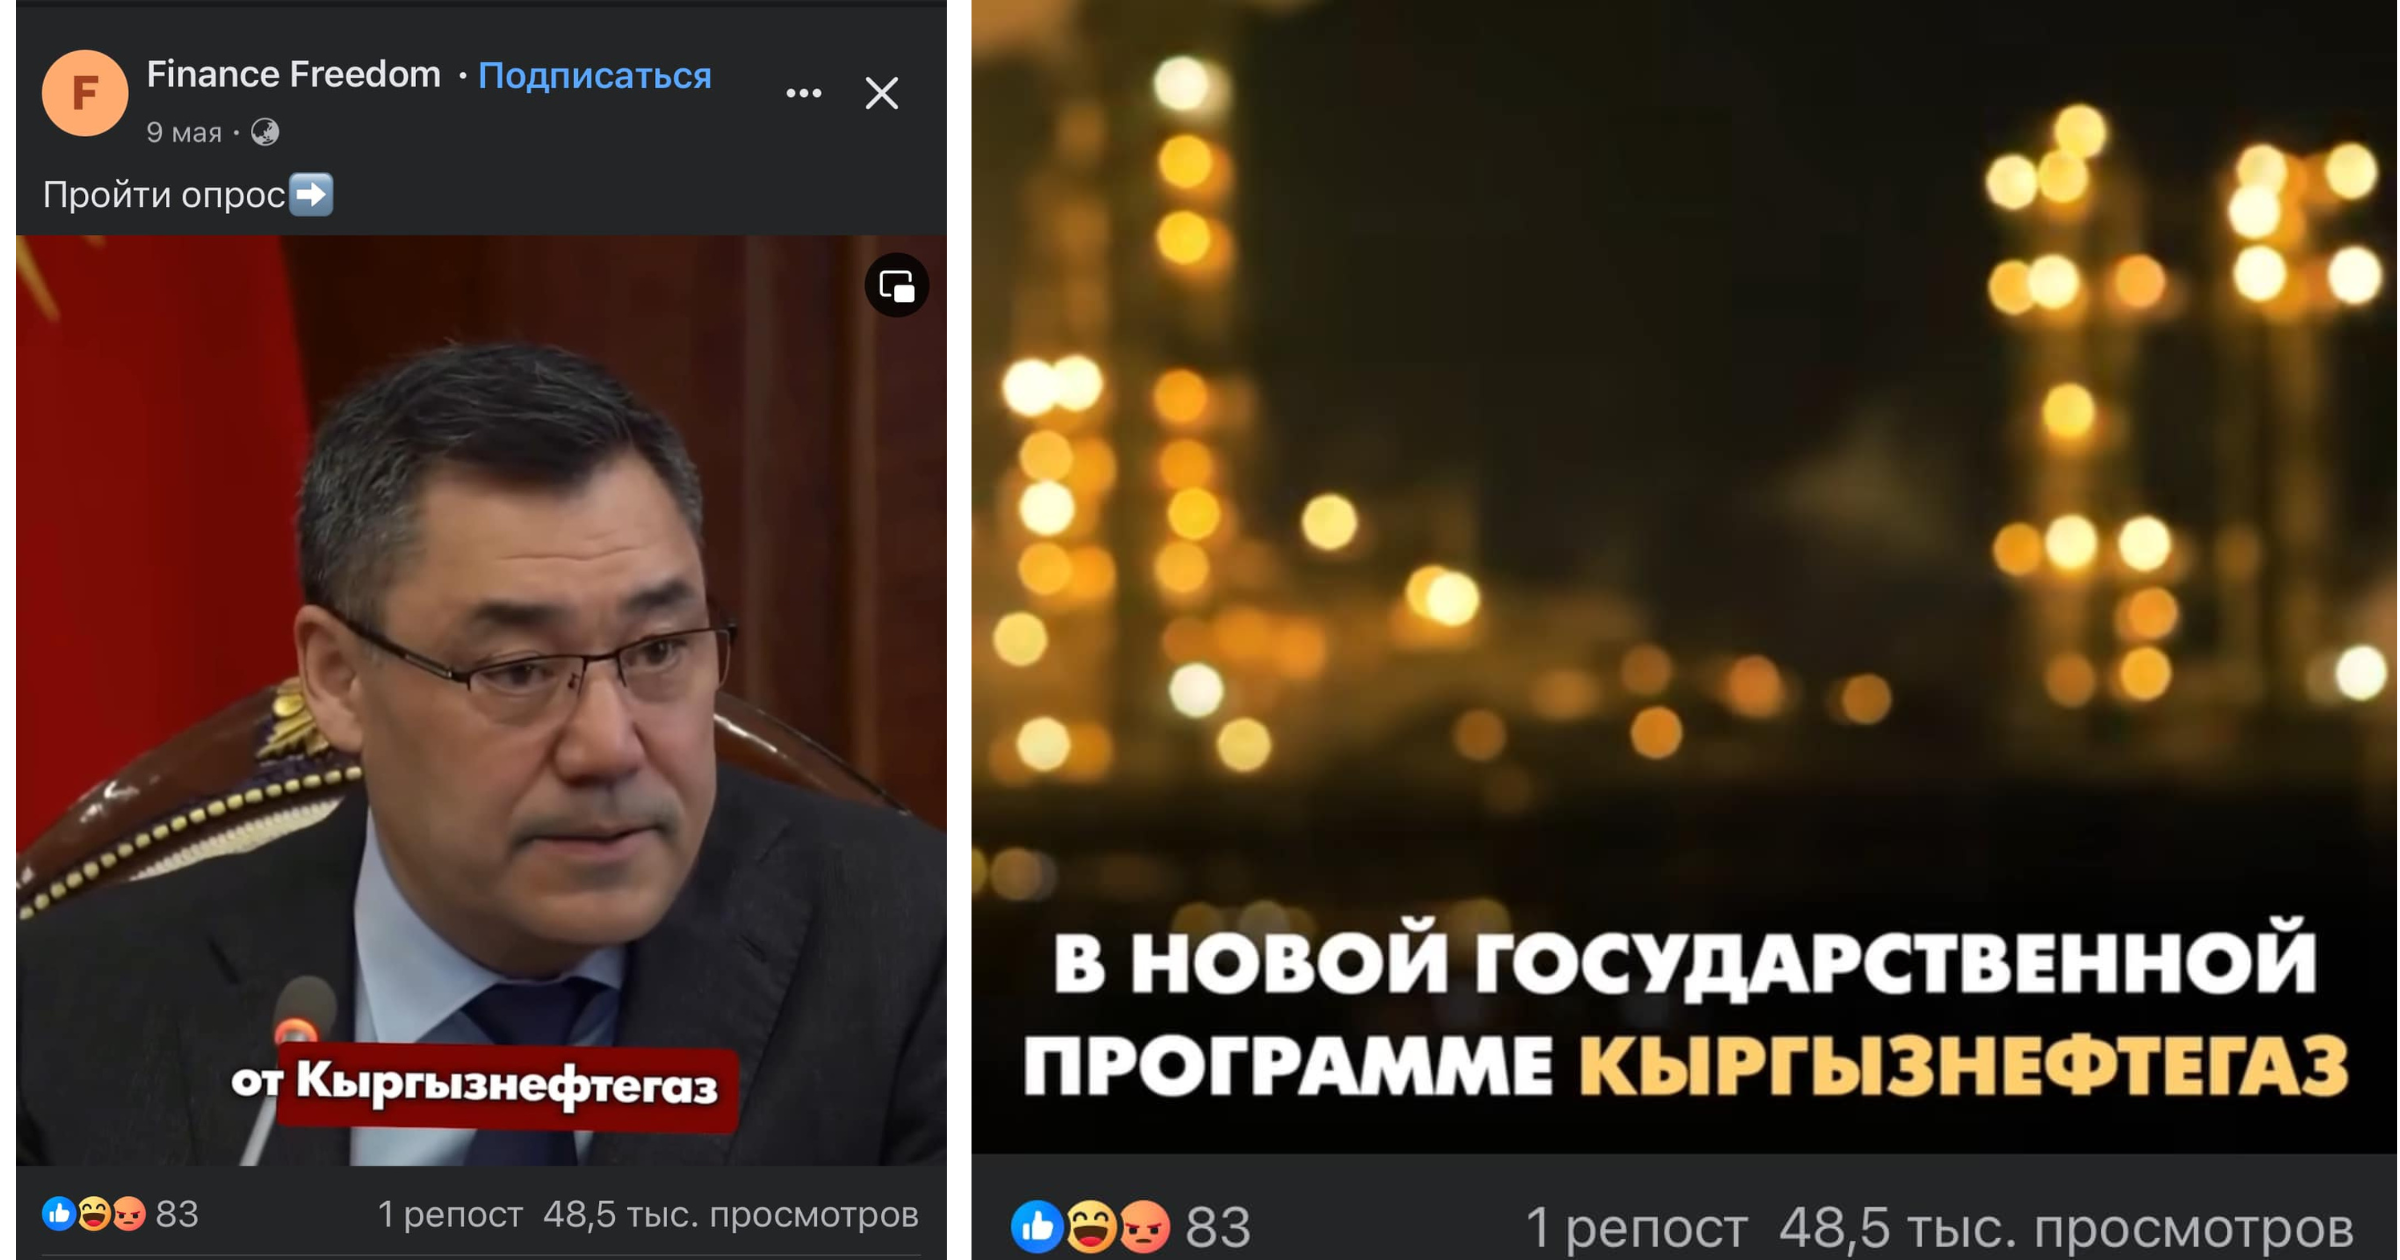 Осторожно, мошенники: В сети подделывают речь президента и призывают вкладываться в «Кыргызнефтегаз»